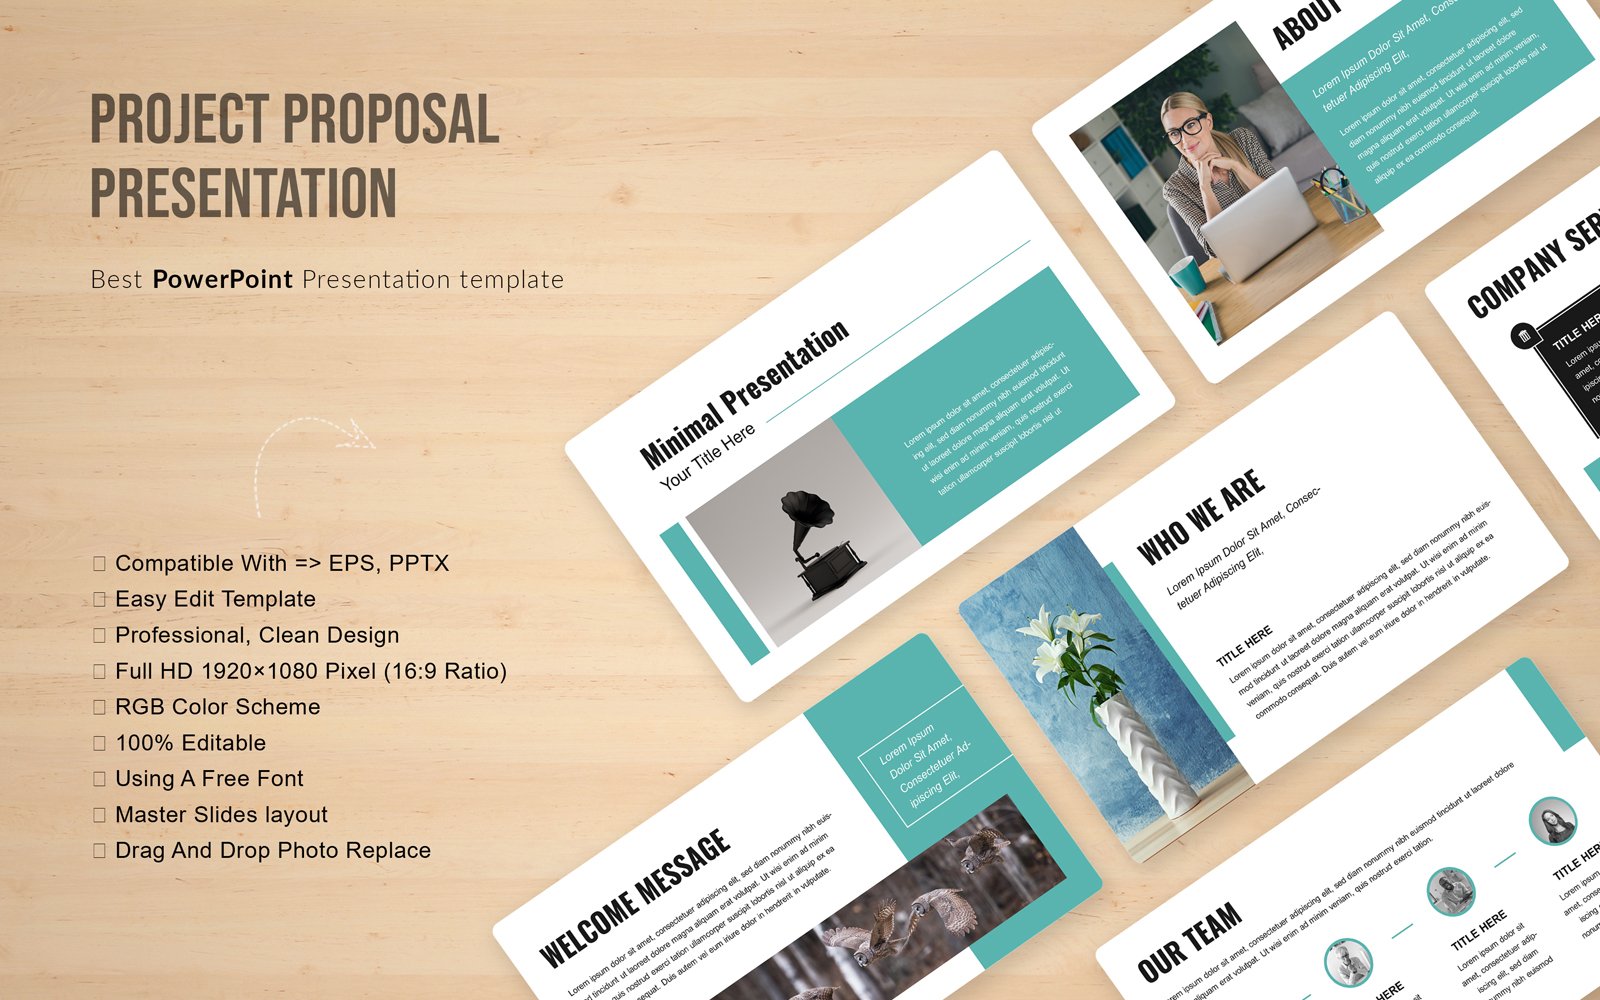 Kit Graphique #323003 Proposition Presentation Web Design - Logo template Preview